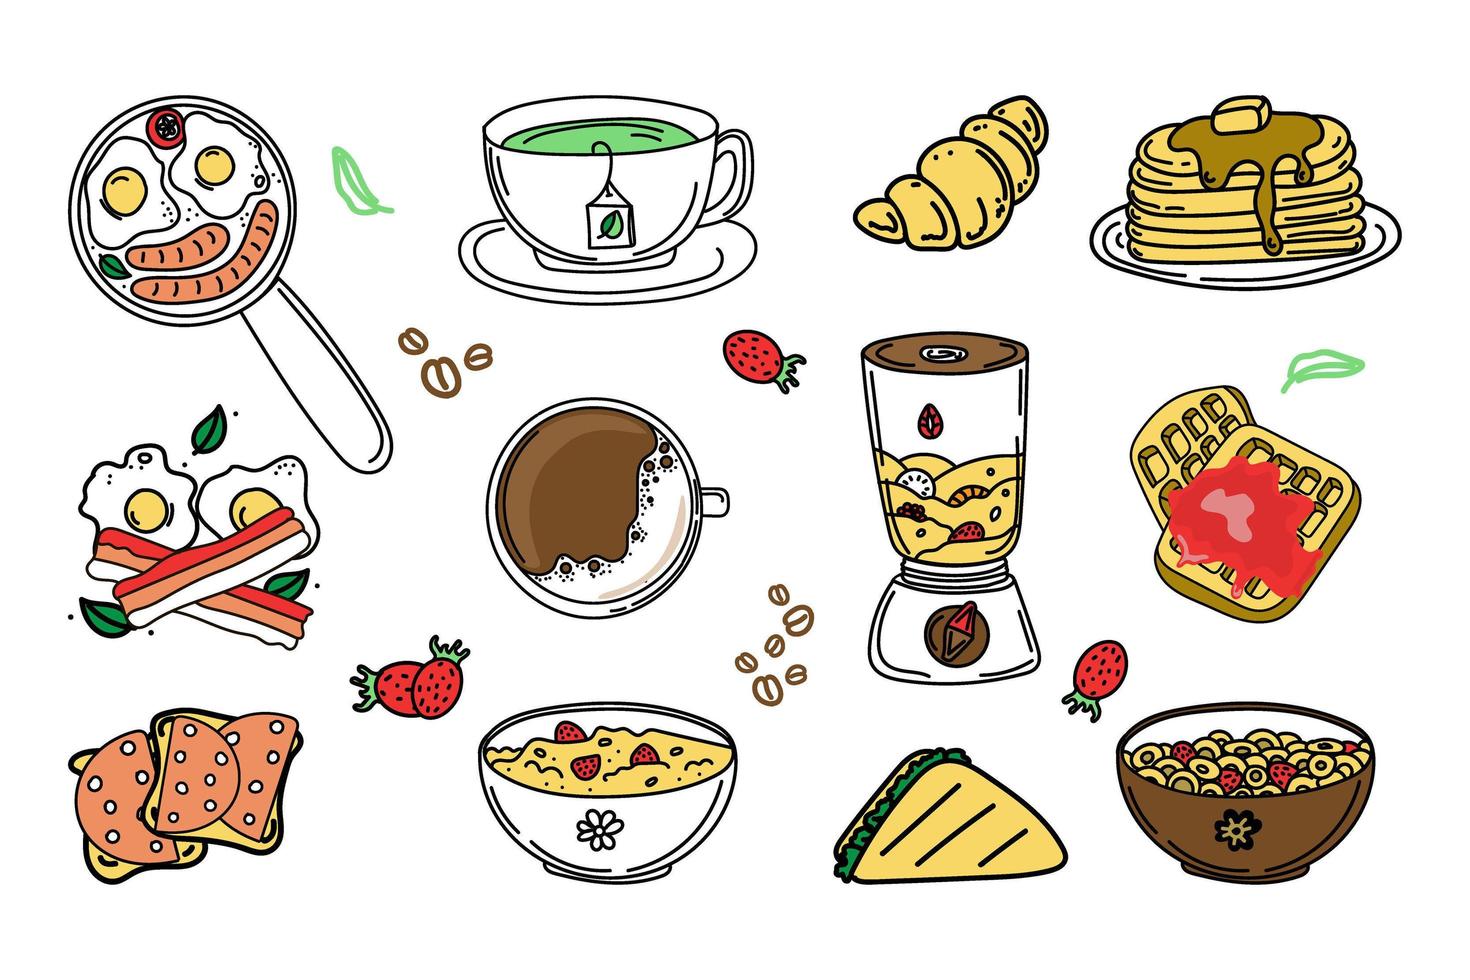 una serie di cibi e bevande per la colazione. elementi in stile doodle disegnati a mano. colazione. Buon giorno. frittelle su un piatto, cialde, porridge con frutti di bosco, cereali, caffè e tè. vettore semplice in doodle.